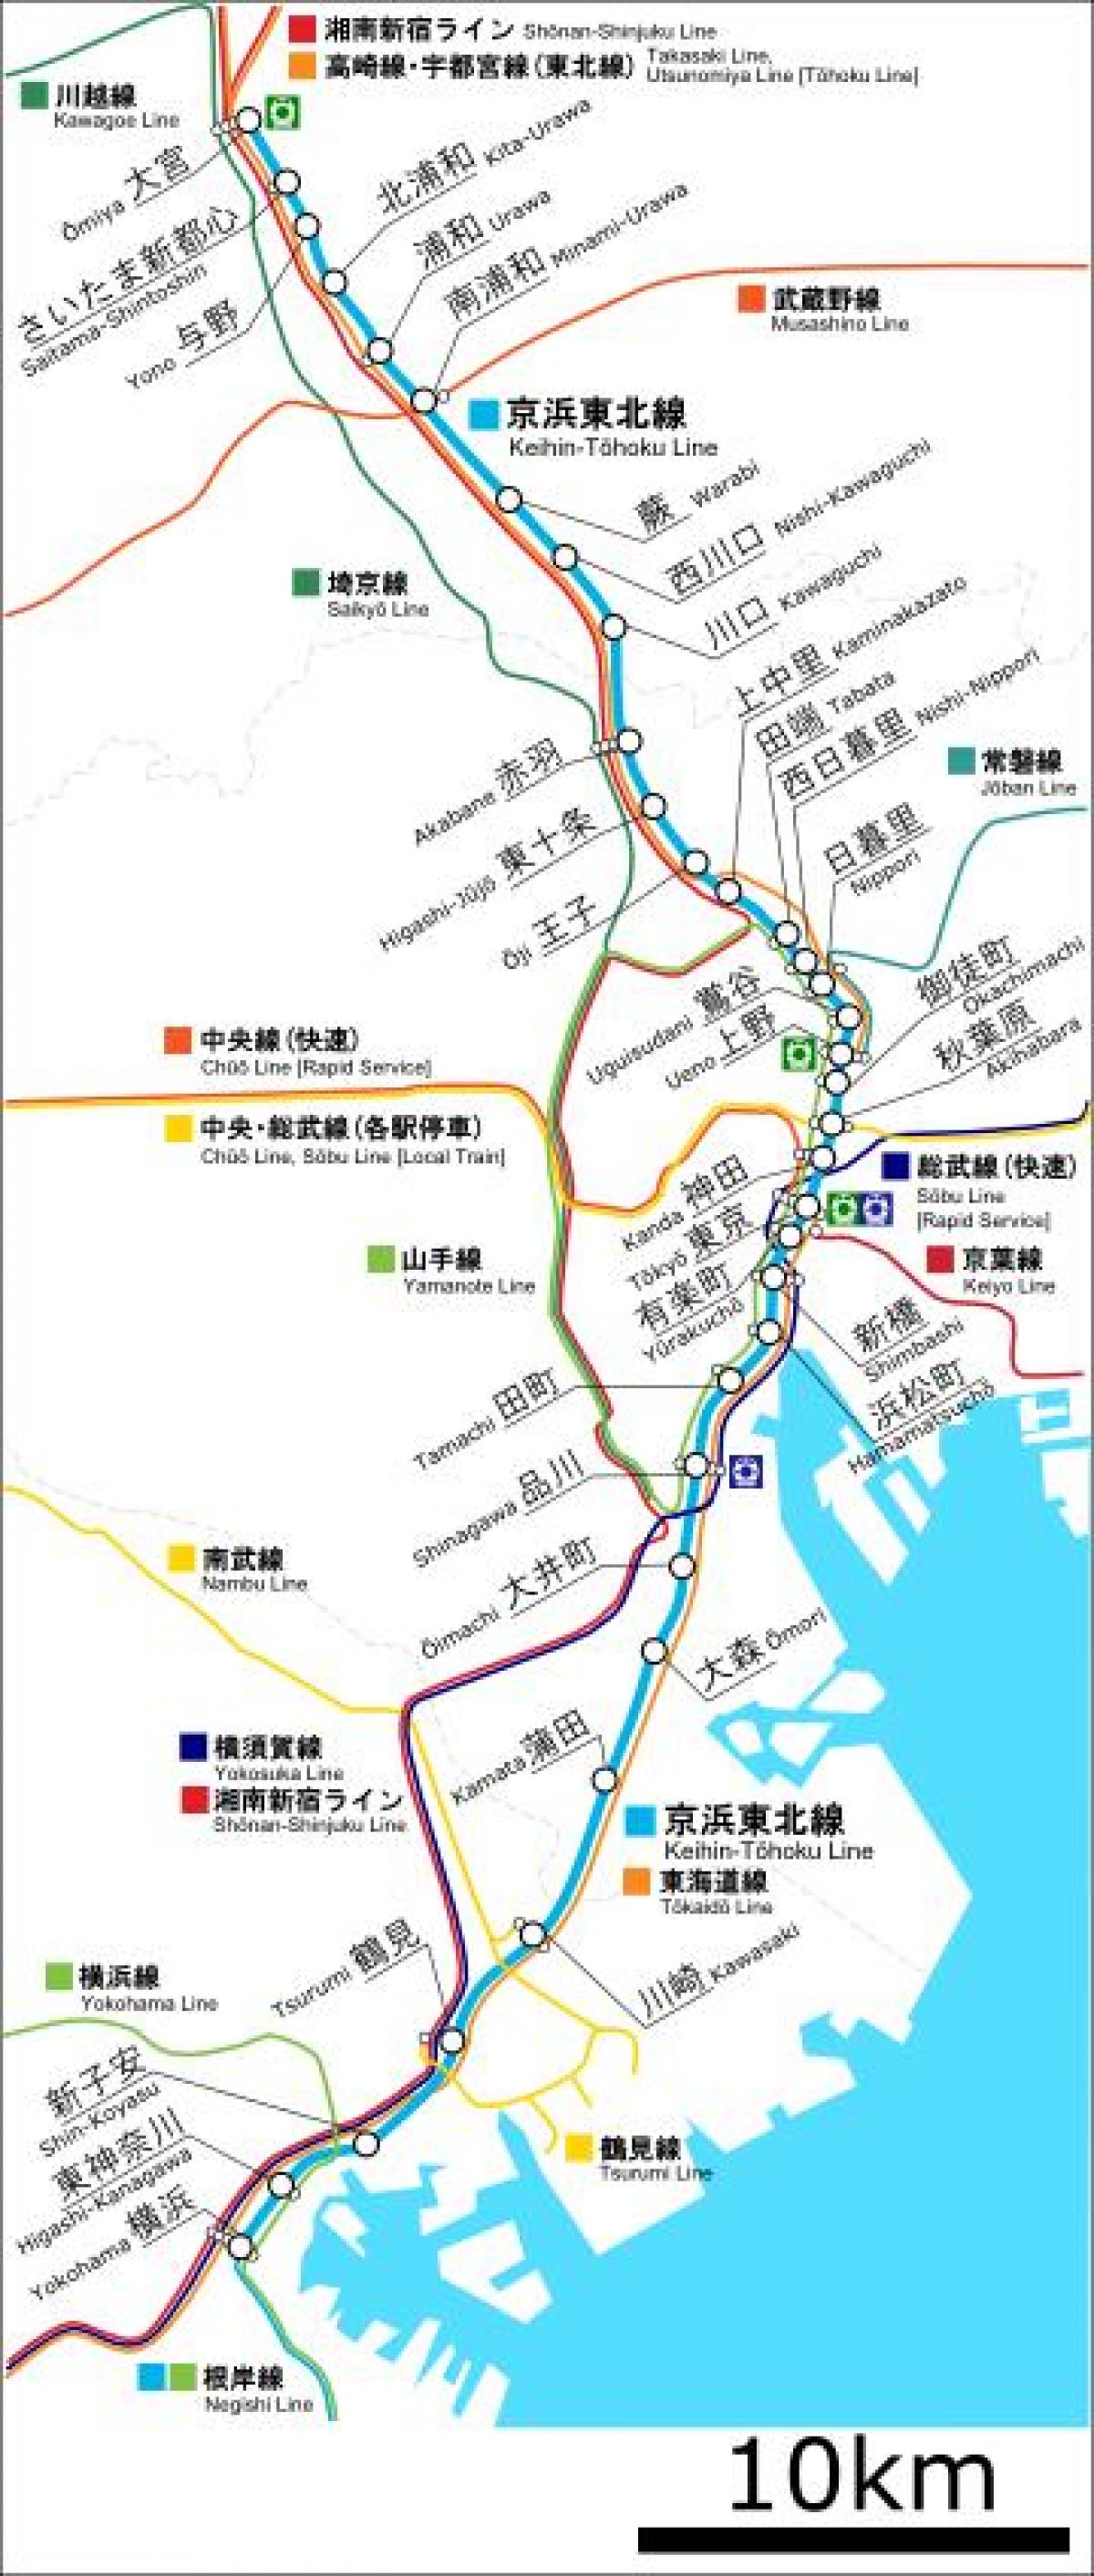 mapa de Keihin tohoku línea